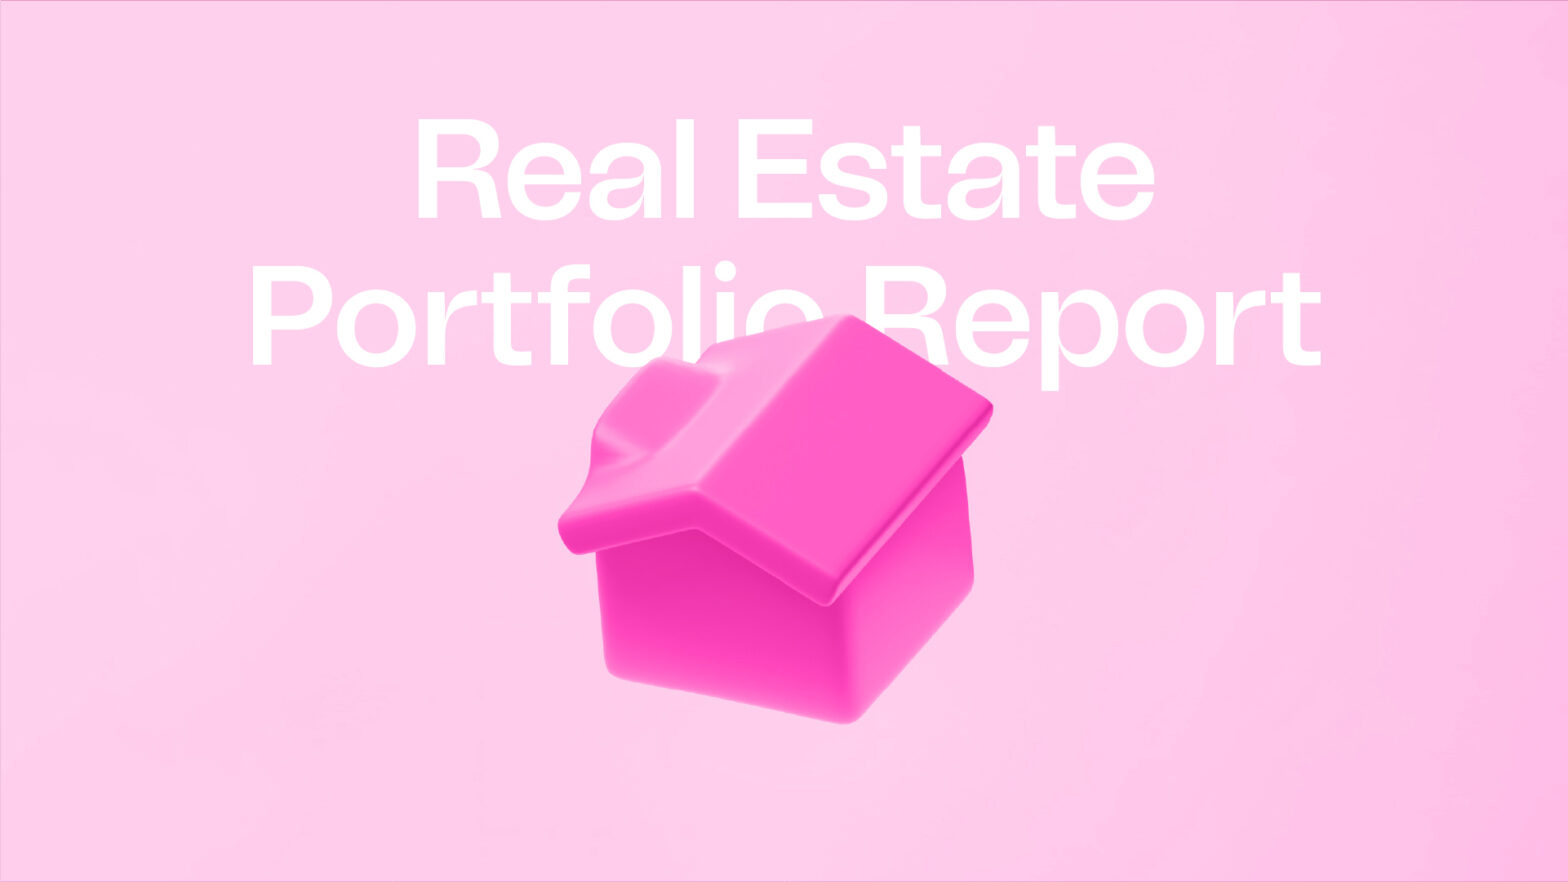 Rise real estate portfolio